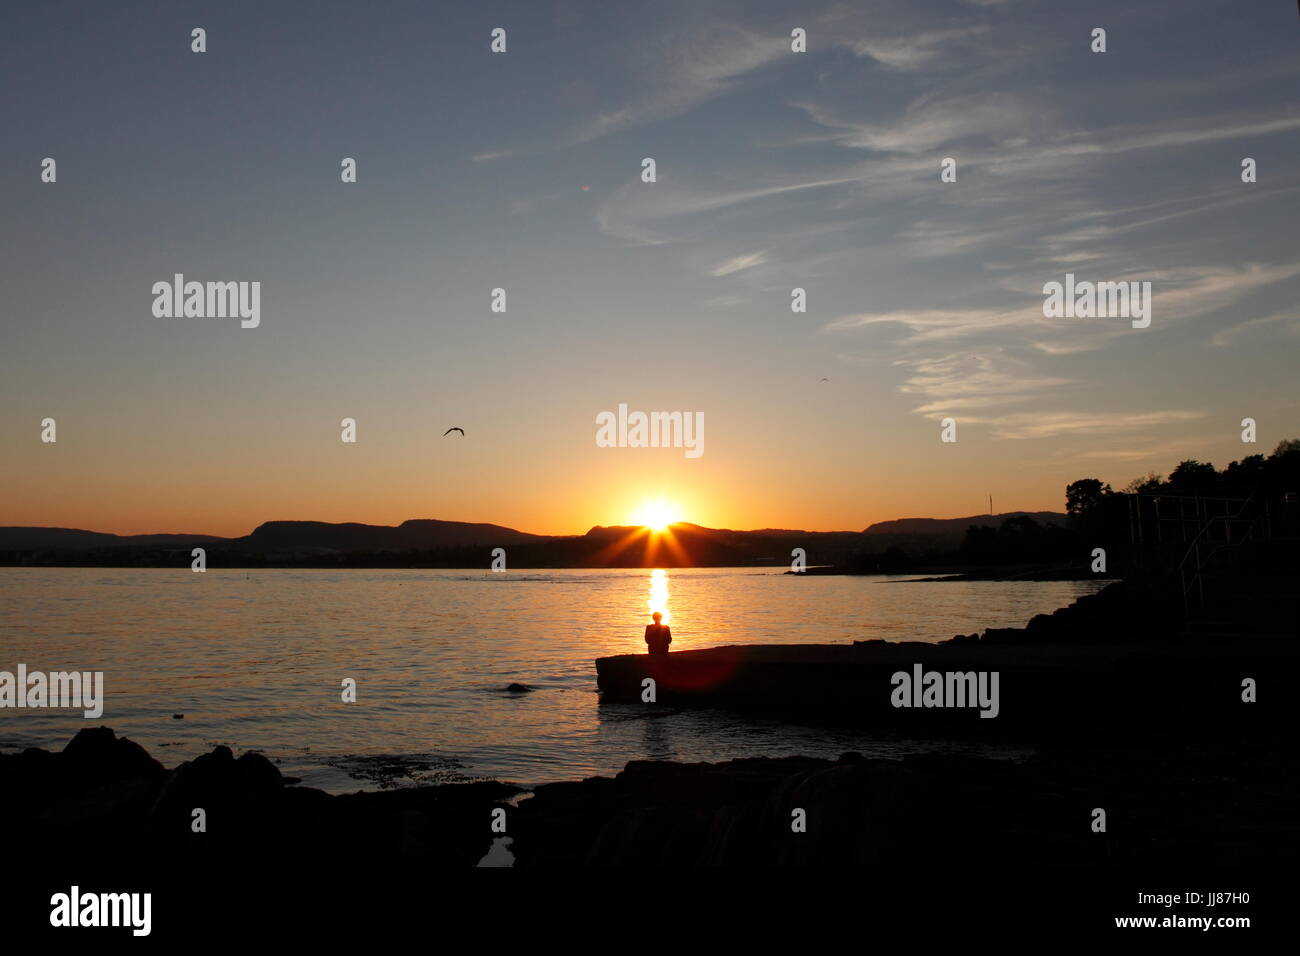 Une femme est à regarder le coucher du soleil à partir de la plage la plus populaire, Huk, à Oslo, en Norvège. Se détendre, profiter, méditer, la pleine conscience Banque D'Images